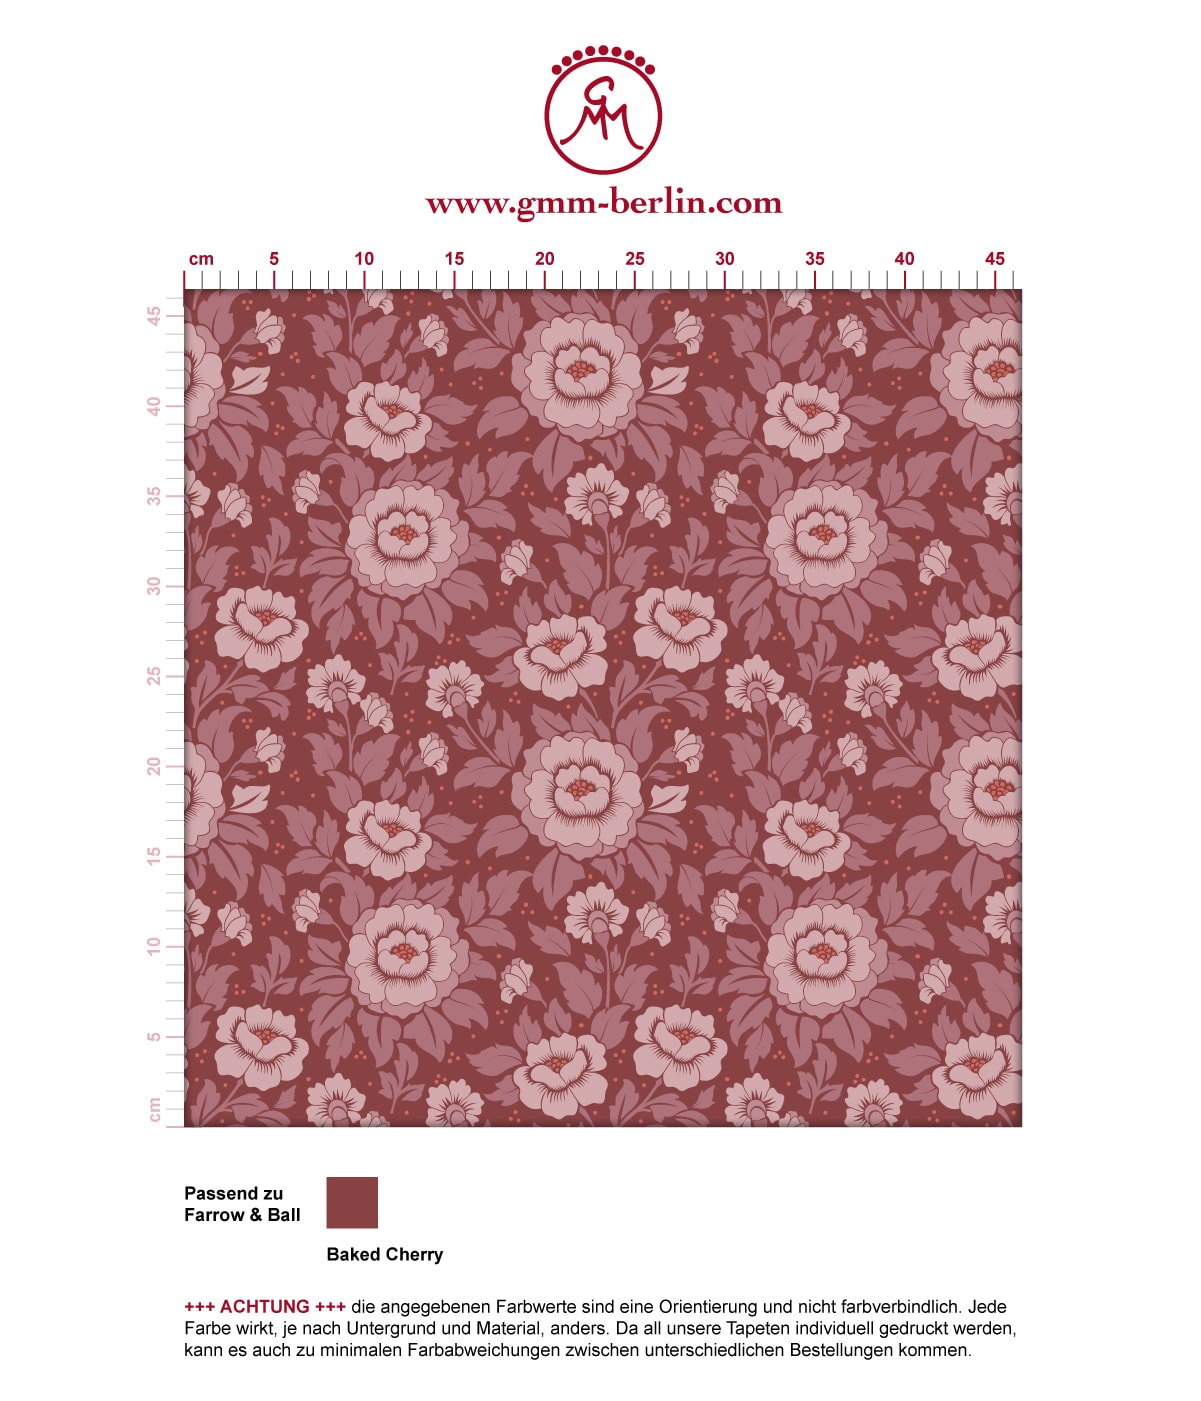 Edle florale Tapete "Mein Rosengarten" mit Rosen Blüten in rot angepasst an Farrow and Ball Wandfarben. Aus dem GMM-BERLIN.com Sortiment: Schöne Tapeten in der Farbe: dunkel rot